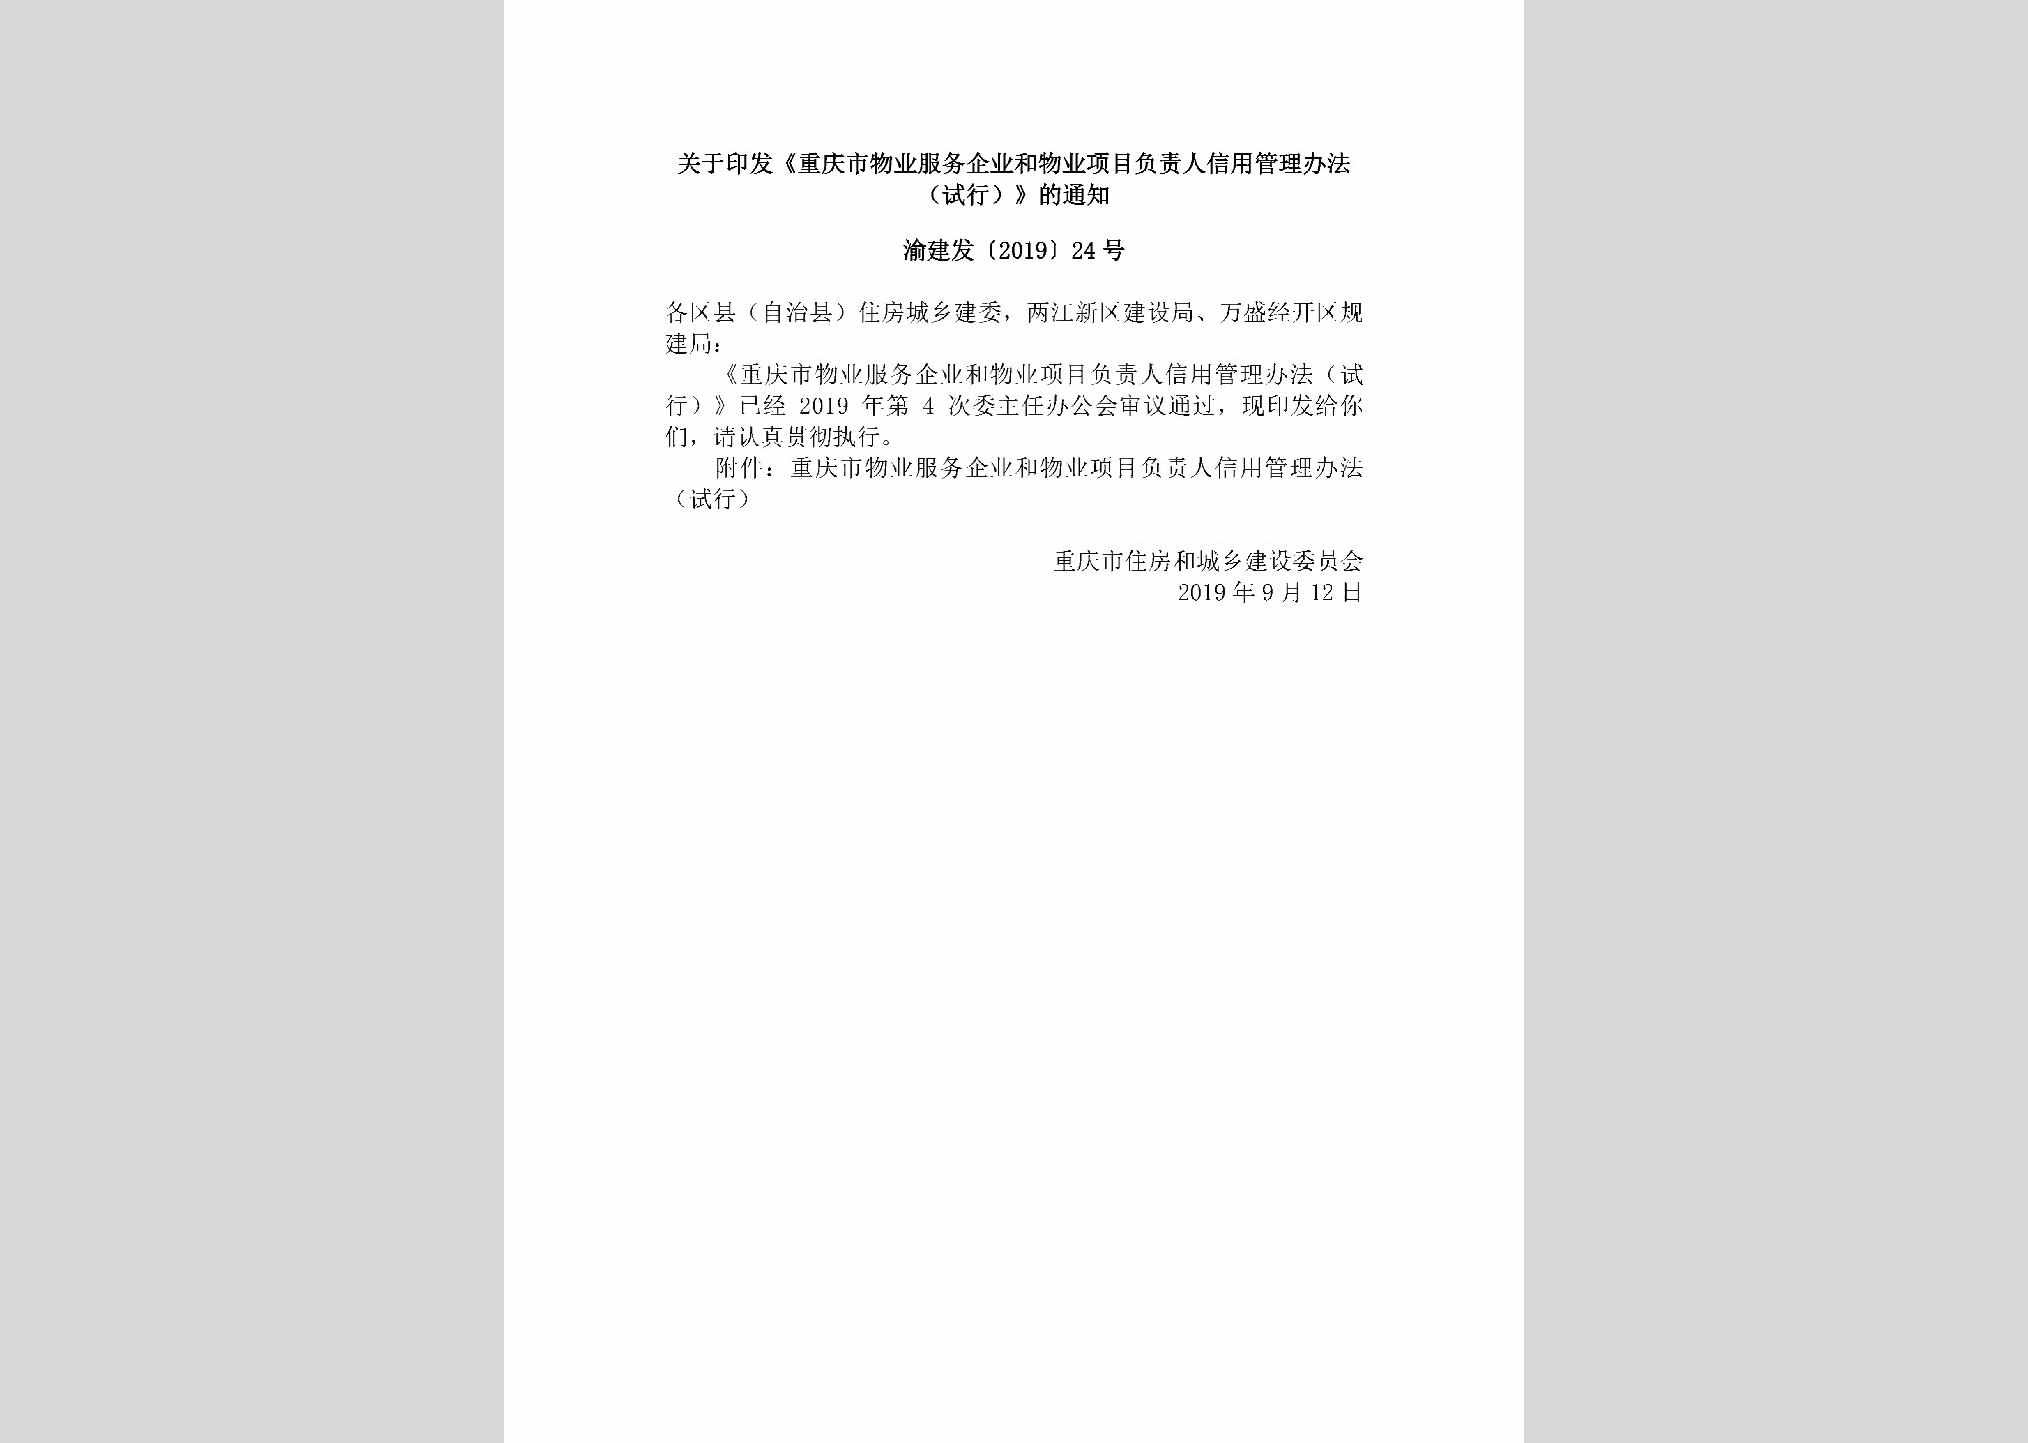 渝建发[2019]24号：关于印发《重庆市物业服务企业和物业项目负责人信用管理办法（试行）》的通知